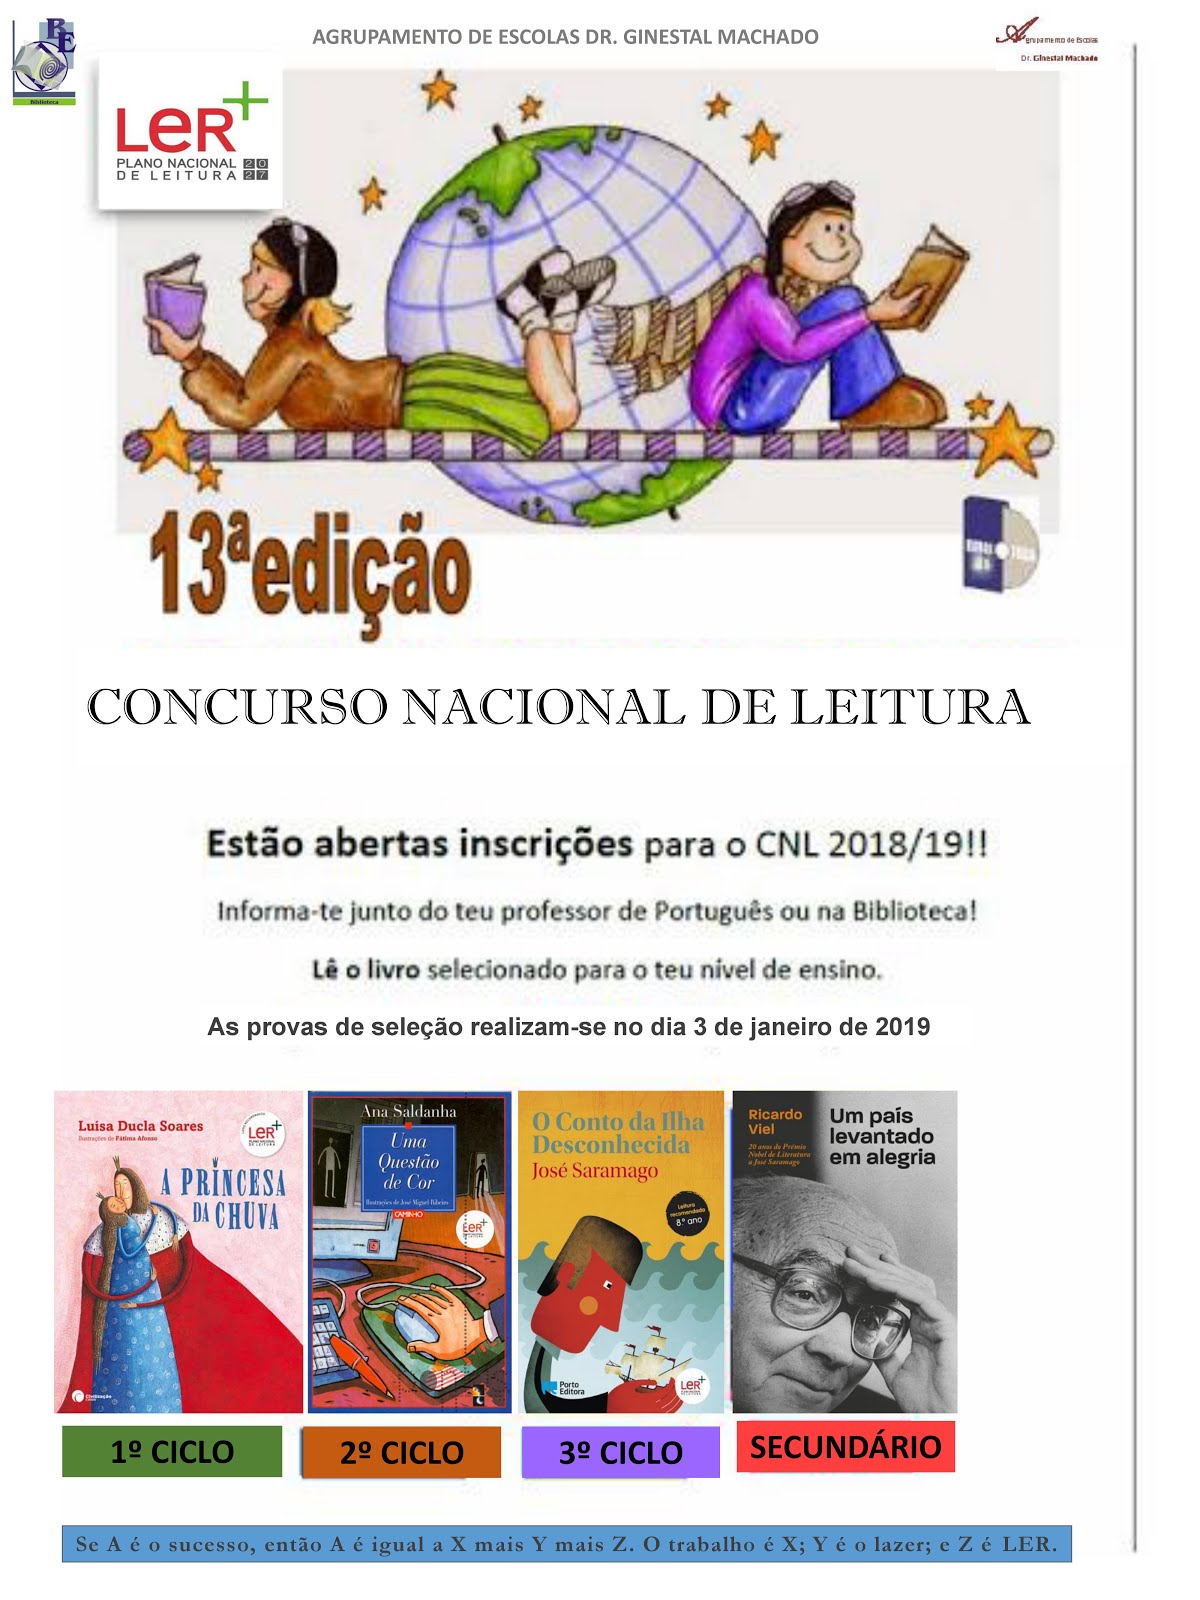 Concurso Nacional de Leitura 2018/2019